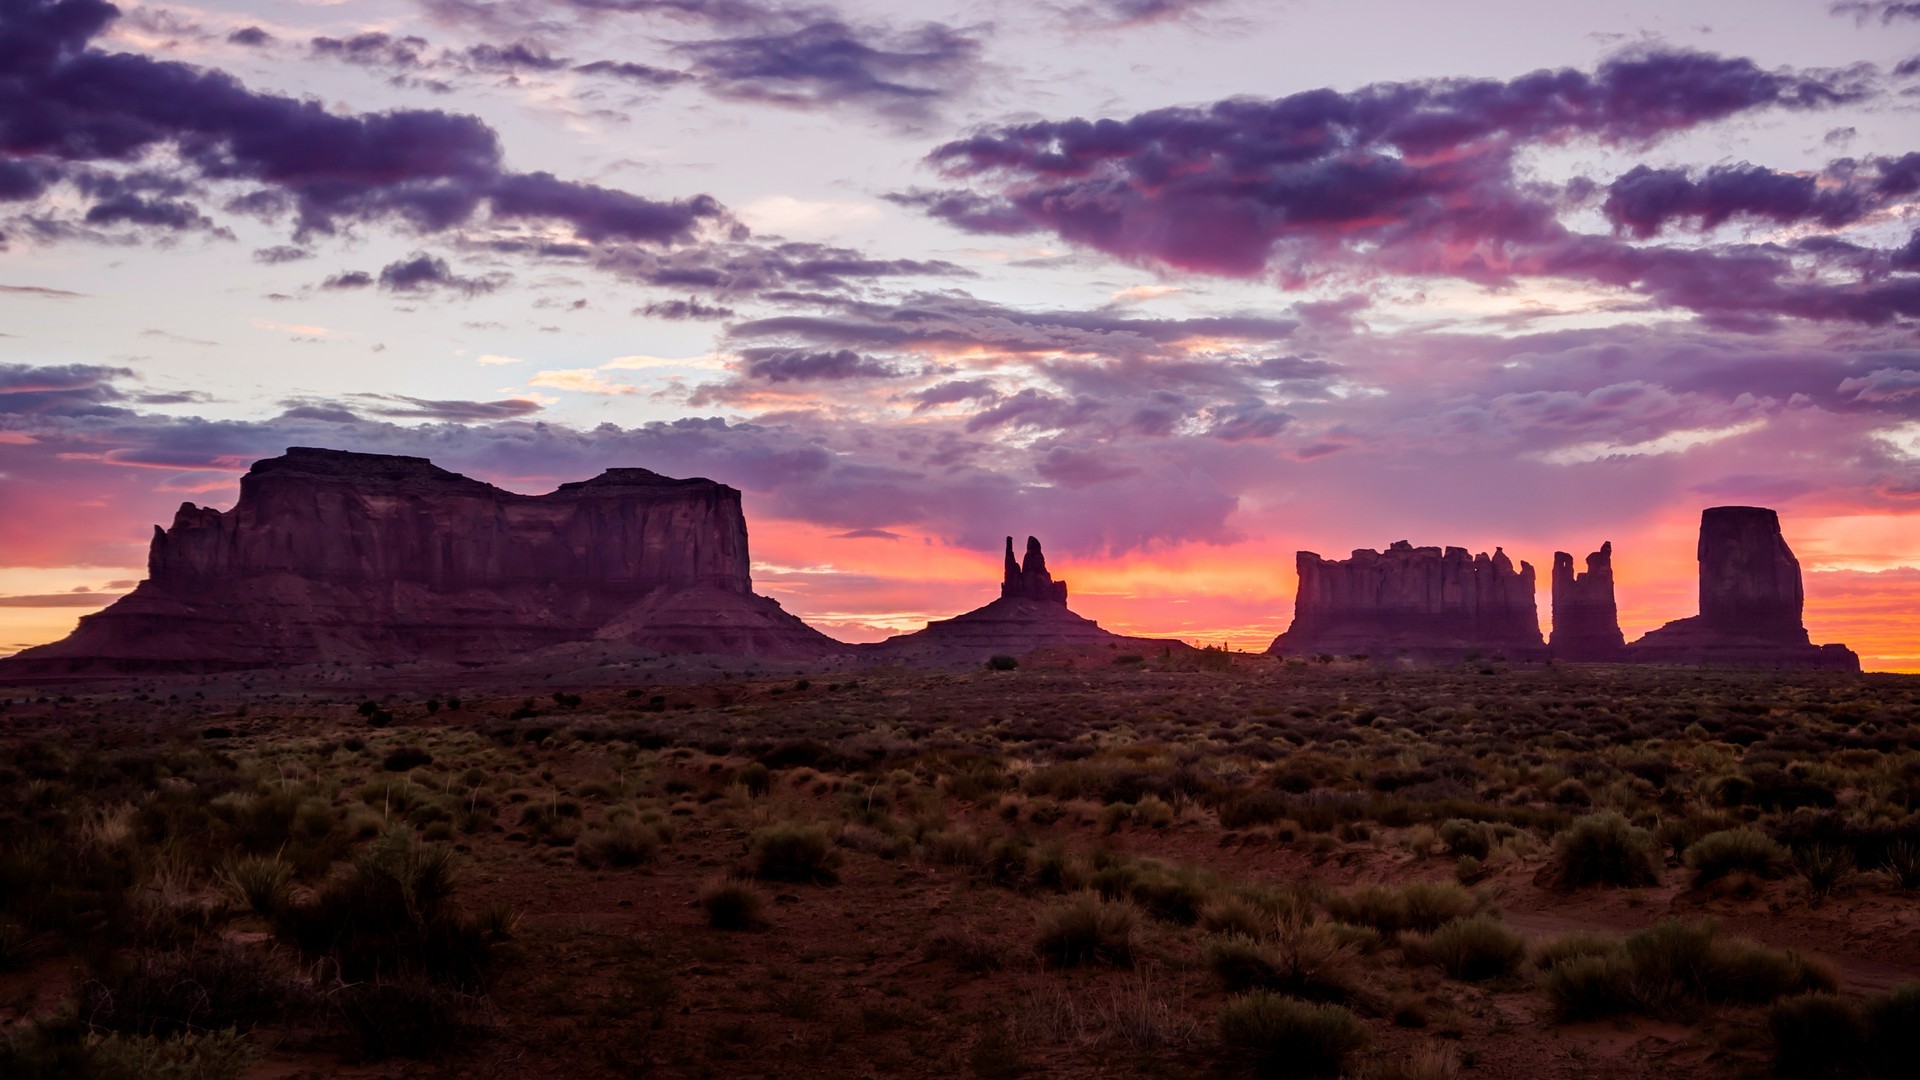 General 1920x1080 sunset landscape desert Utah nature sunlight sky clouds rock formation